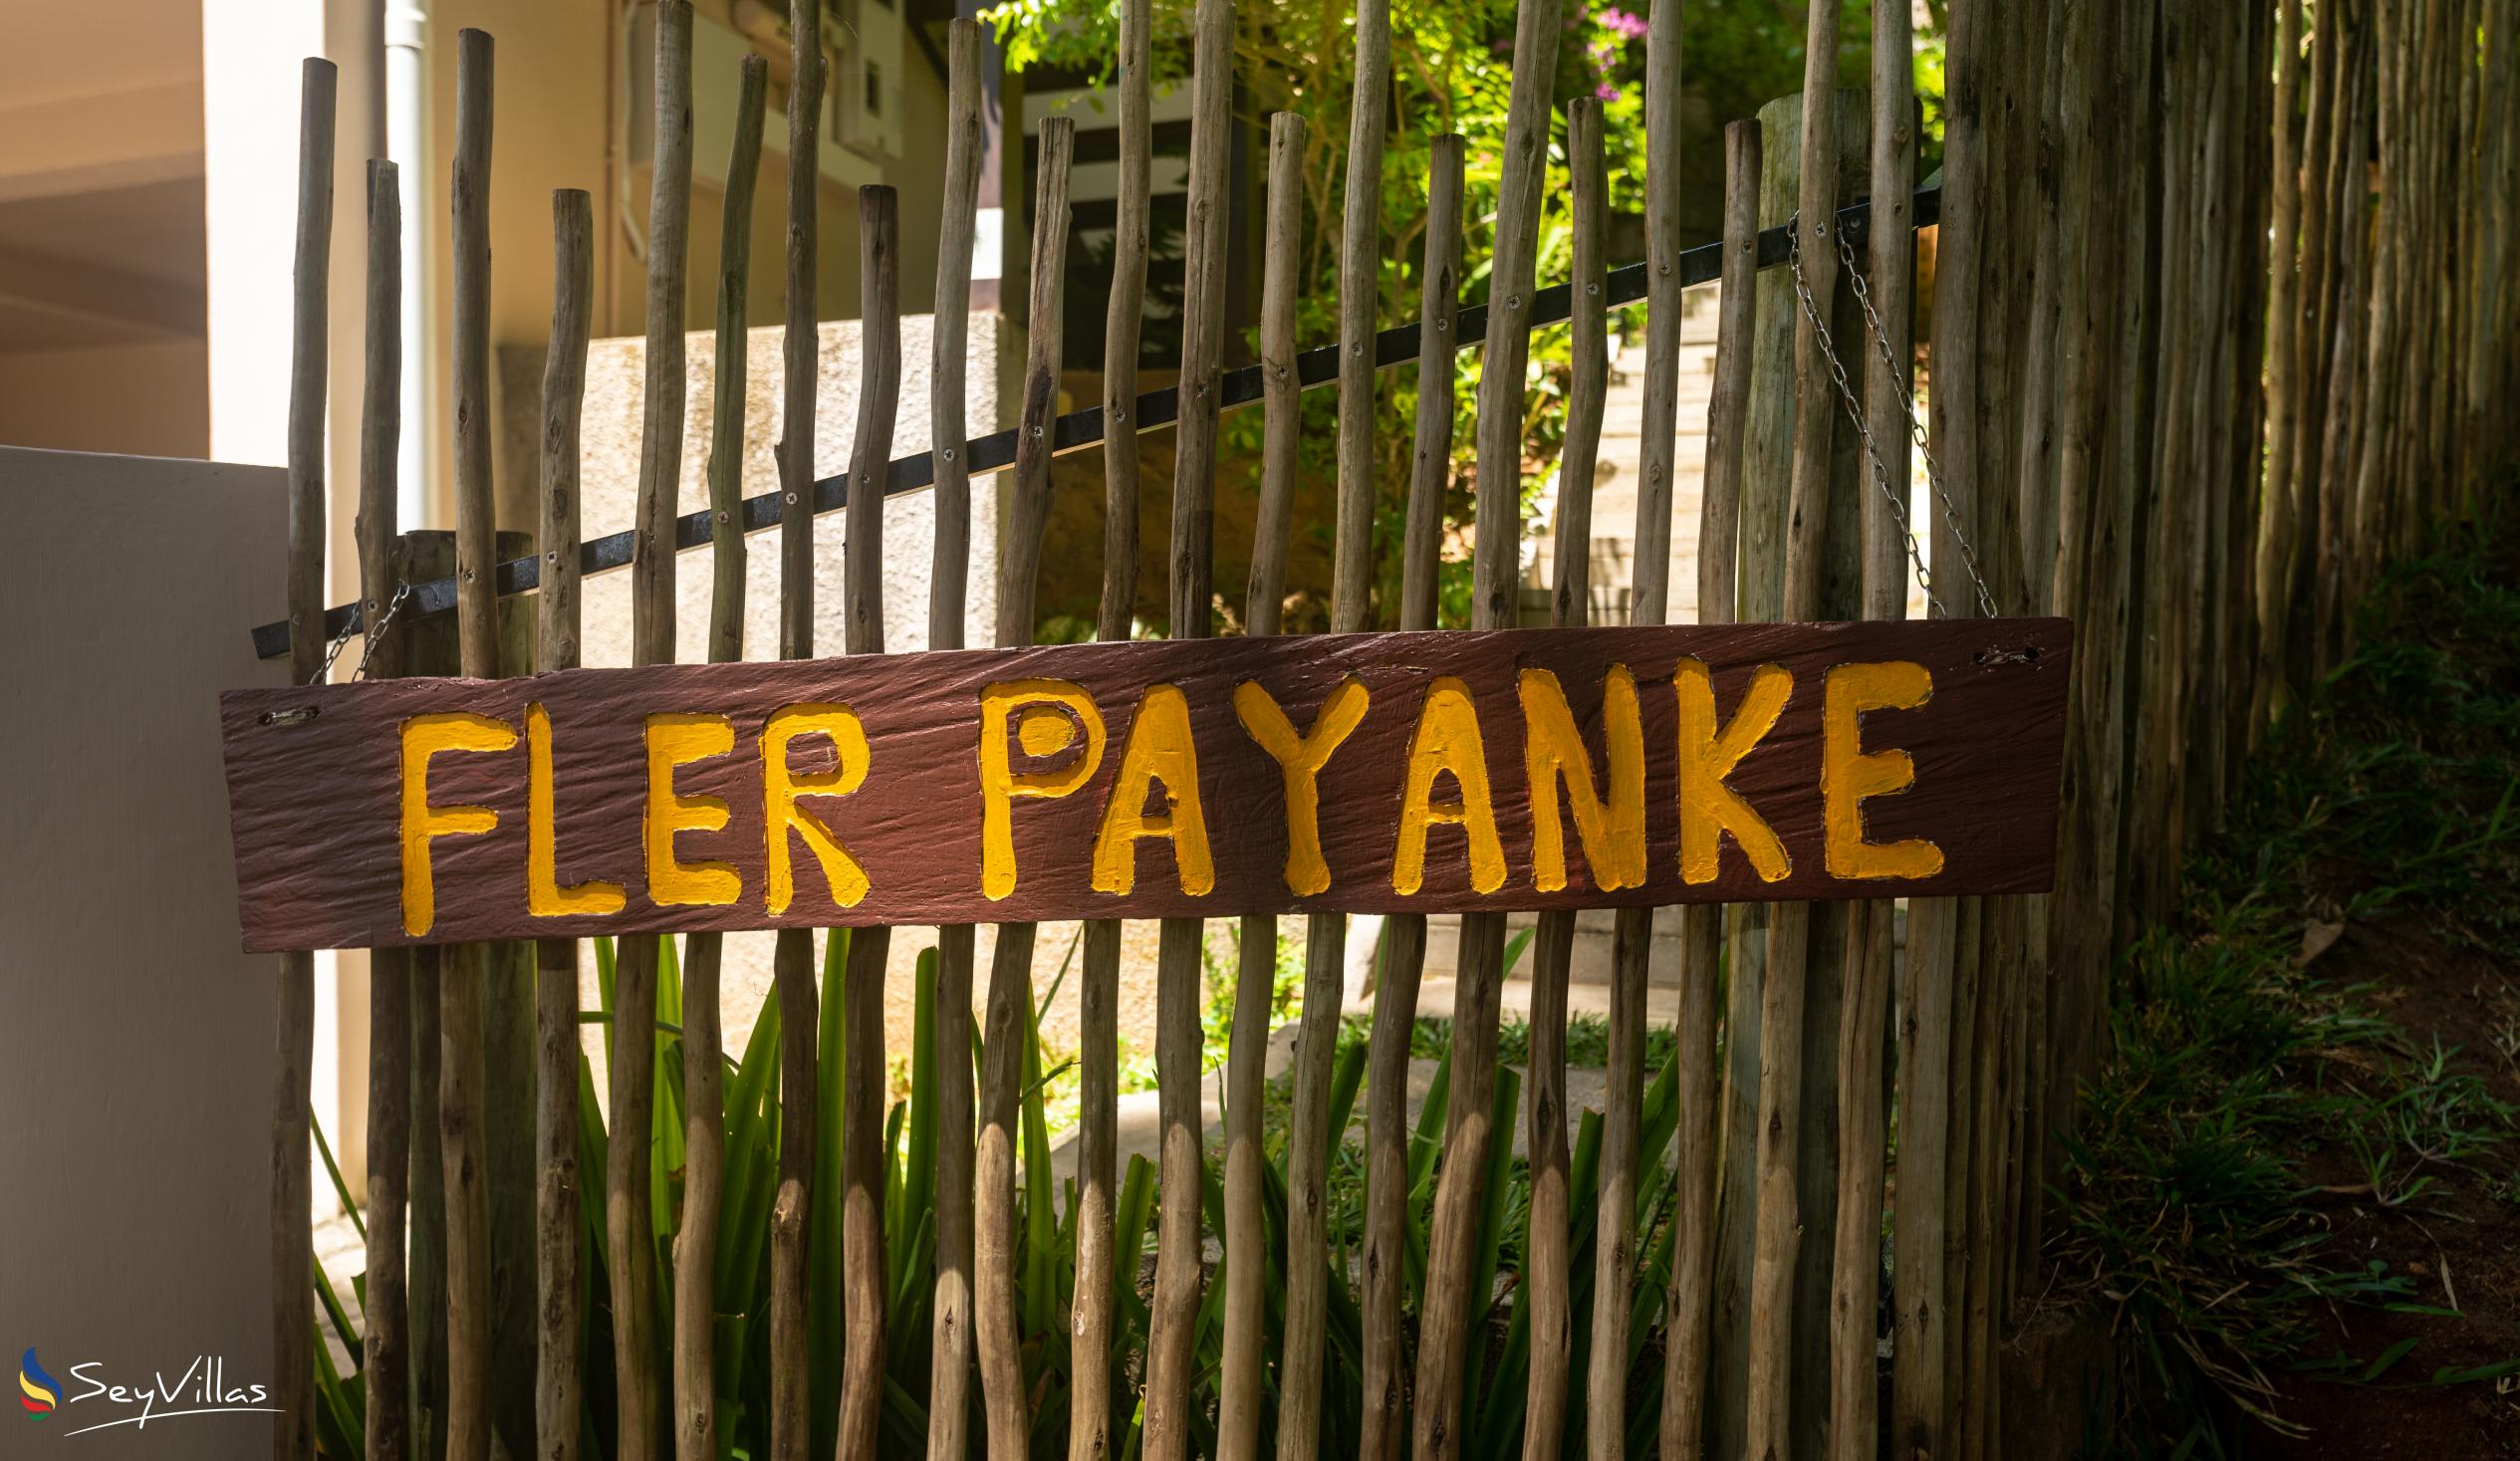 Foto 15: Fler Payanke - Aussenbereich - Mahé (Seychellen)